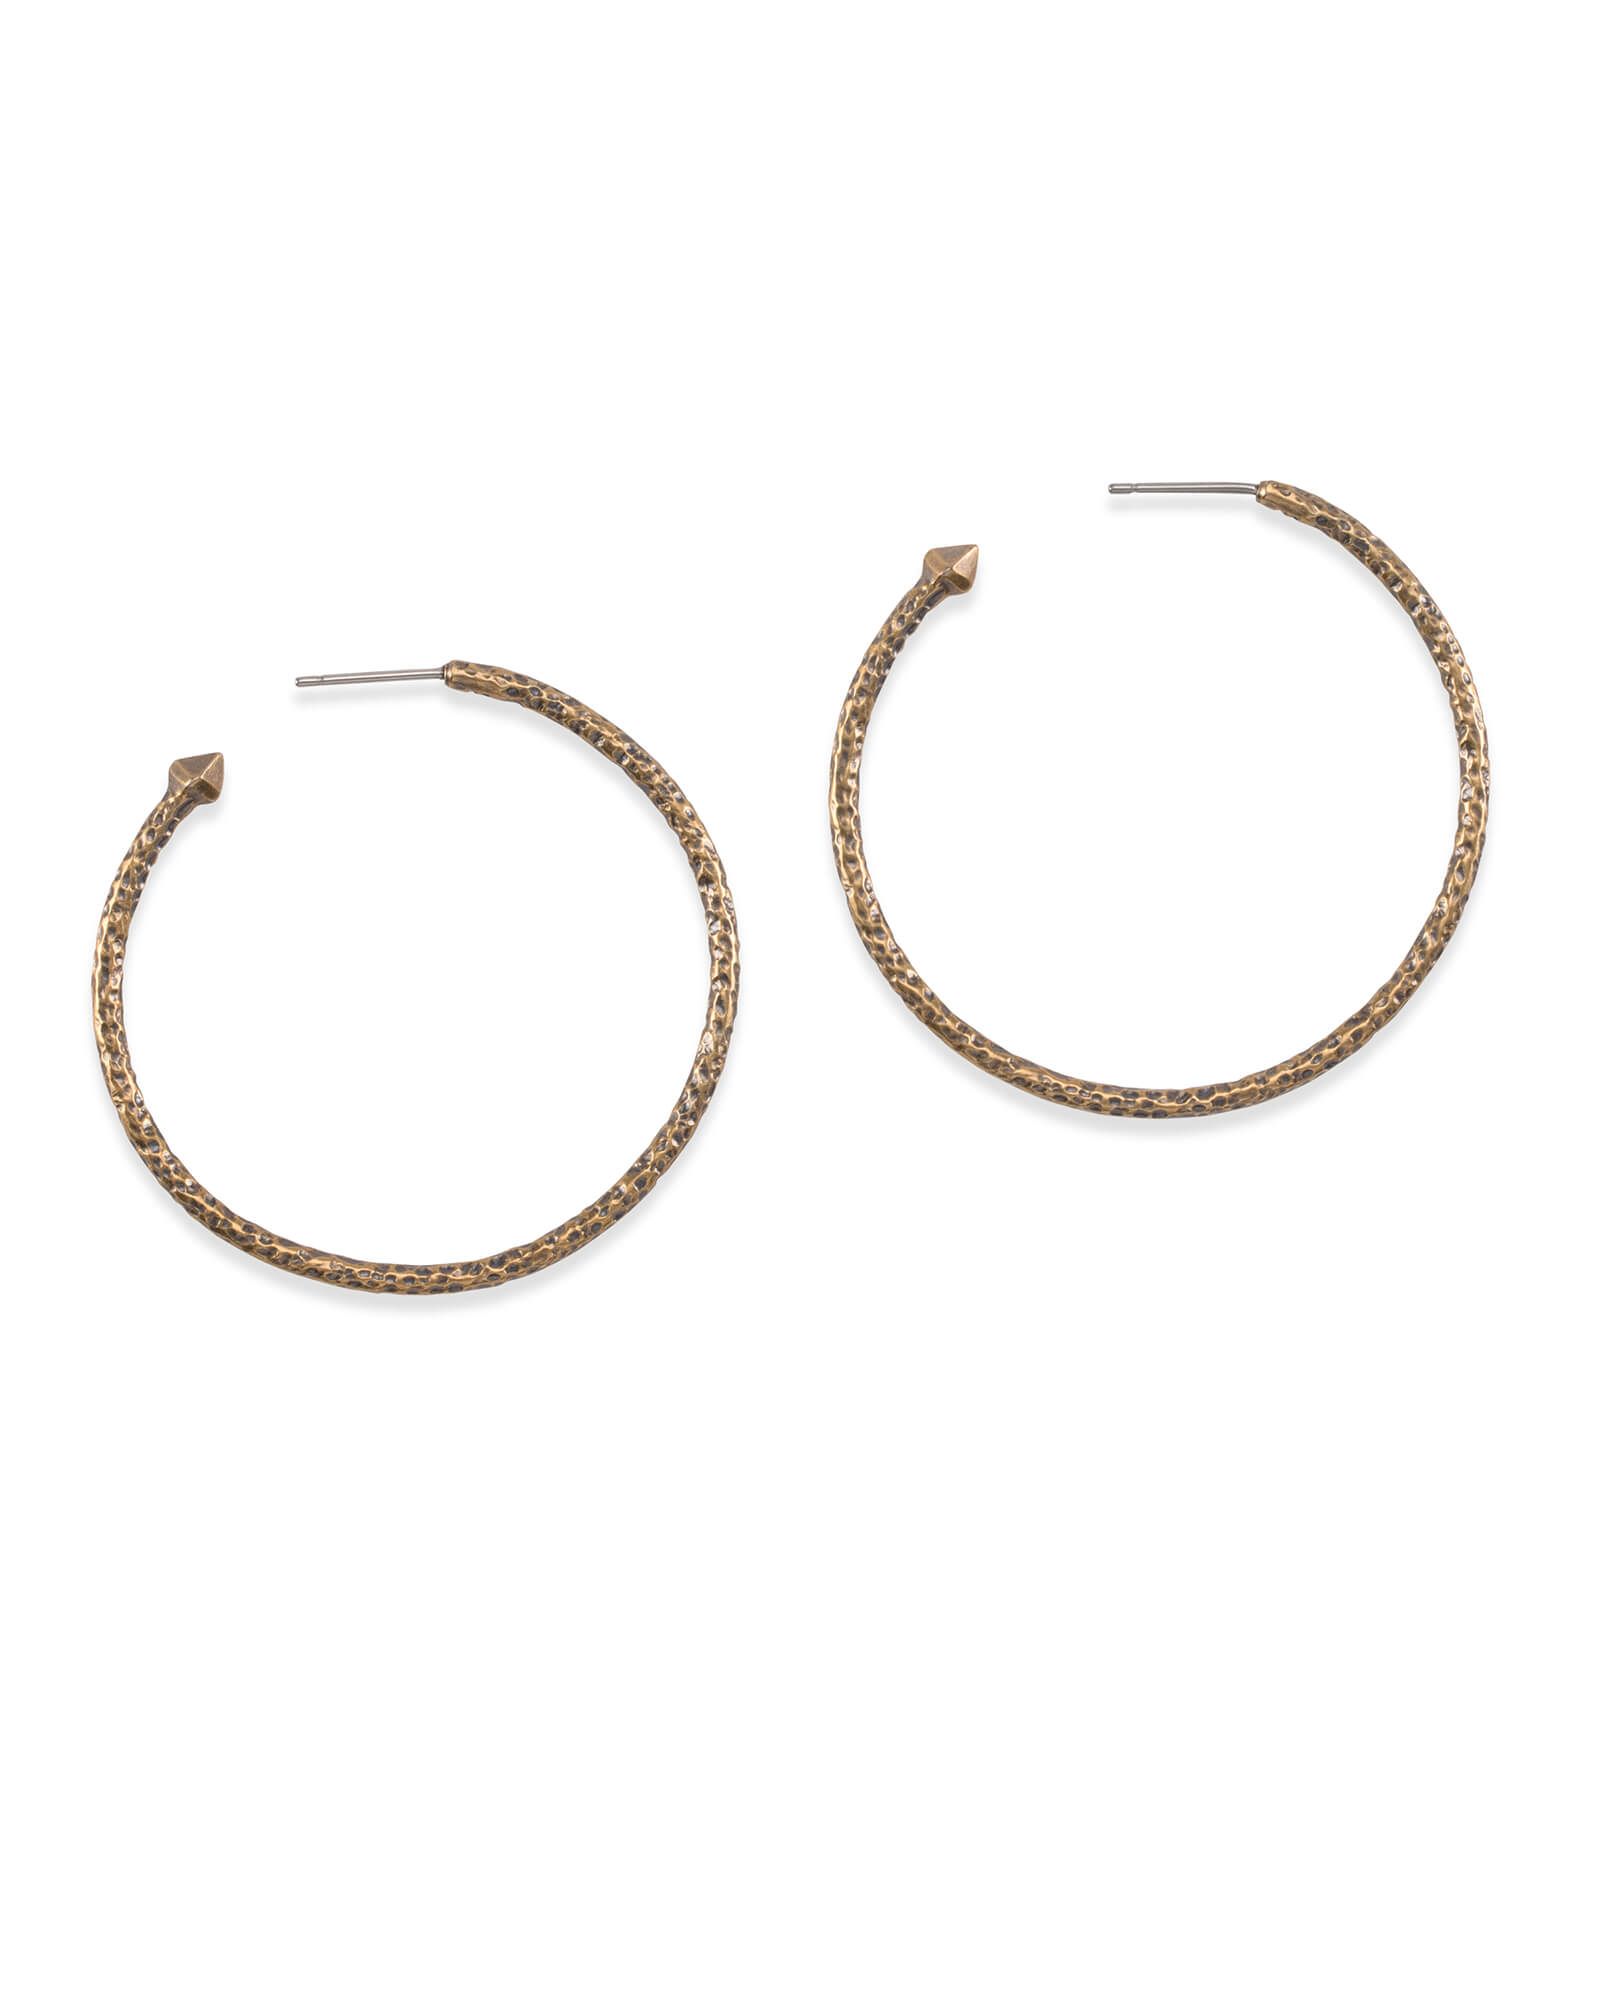 Hammered Hoop Earrings in Vintage Gold | Kendra Scott